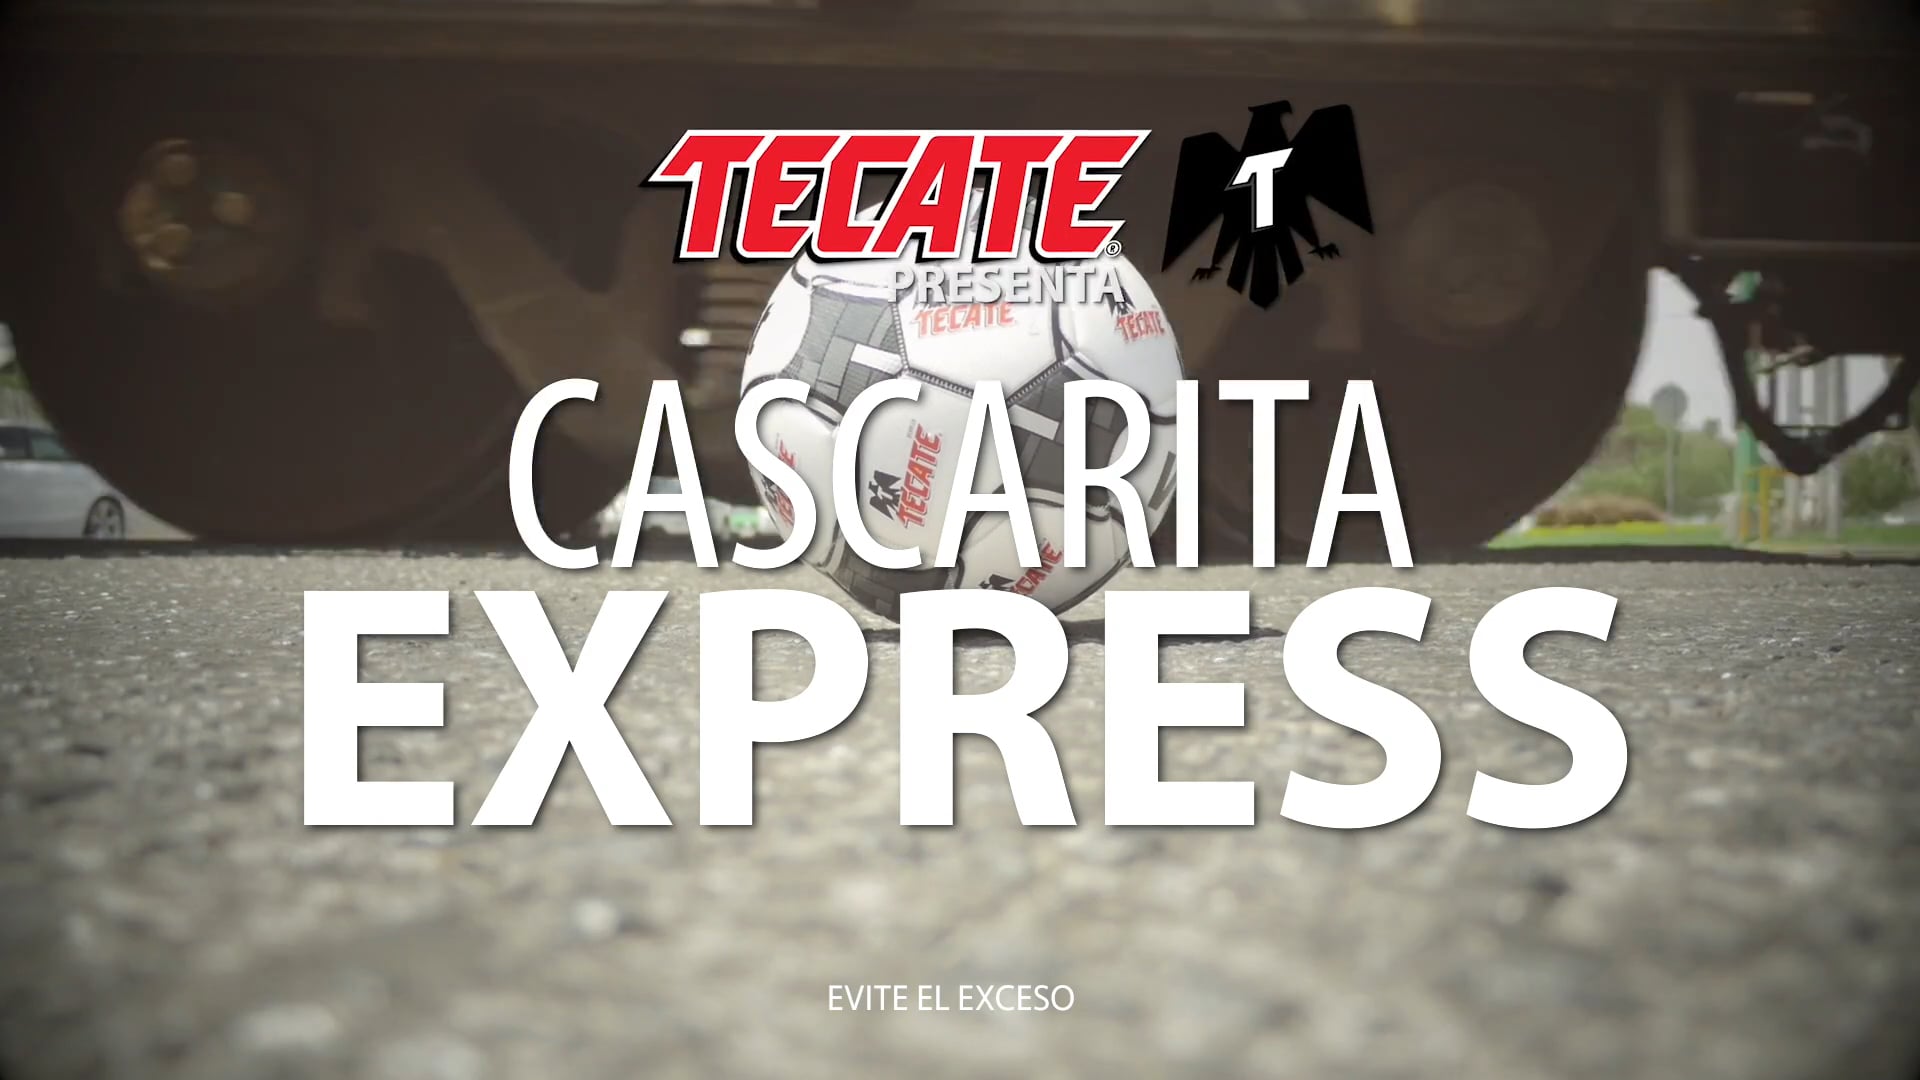 TECATE - Cascarita Express